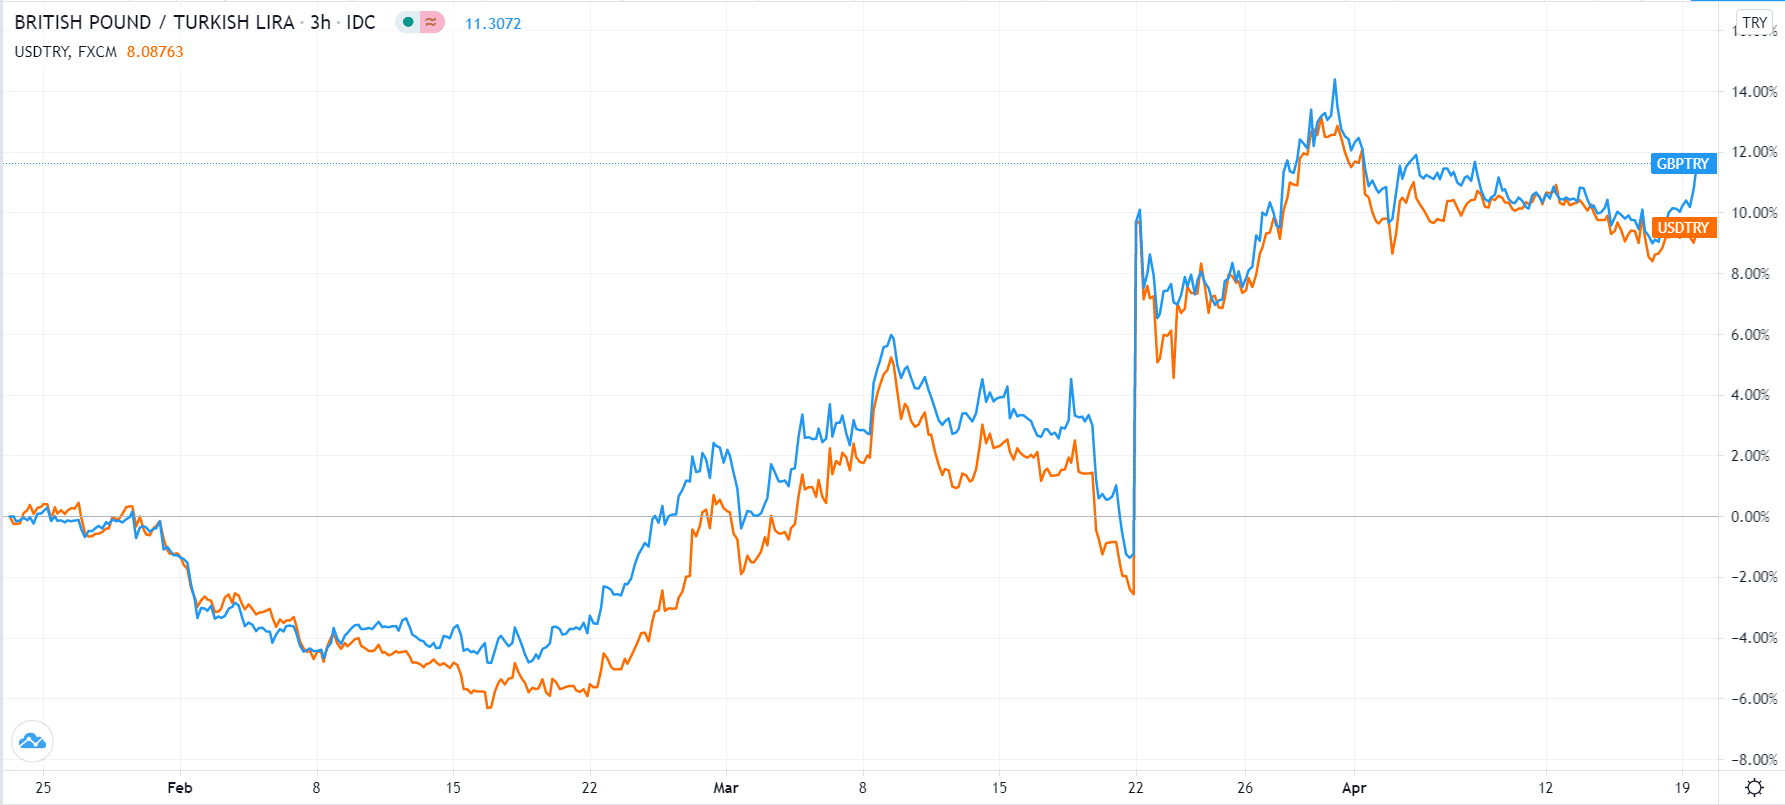 USD/TRY vs. GBP/TRY